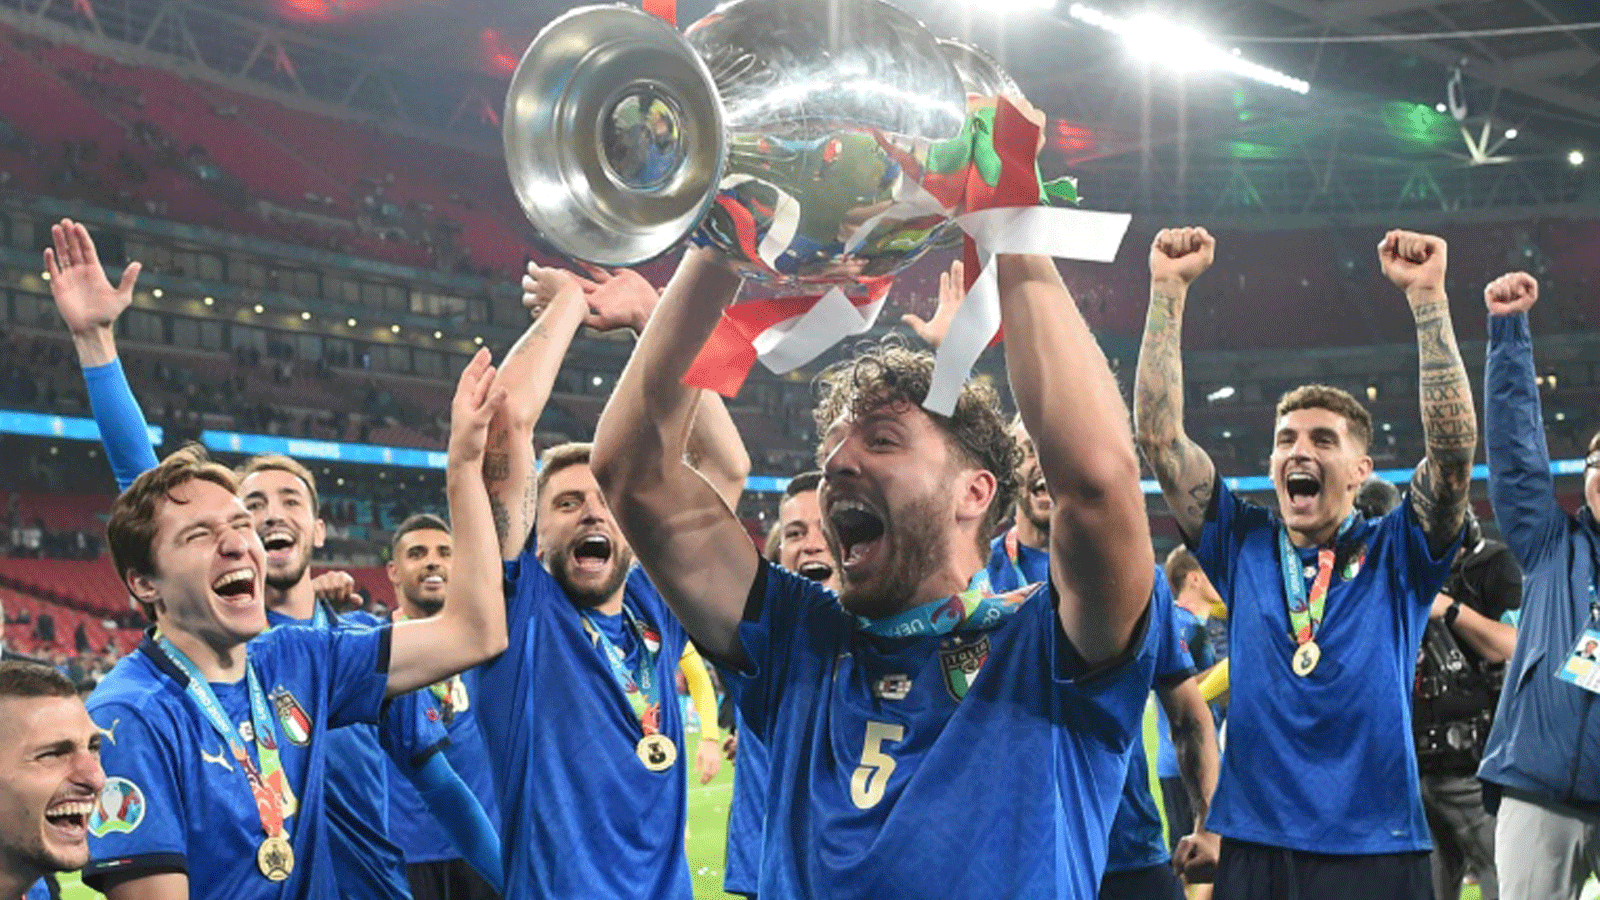 مانويل لوكاتيلي يحمل كأس أوروبا محتفلاً مع زملائه في المنتخب الإيطالي بعد الفوز باللقب على حساب إنكلترا في 11 تموز/يوليو 2021